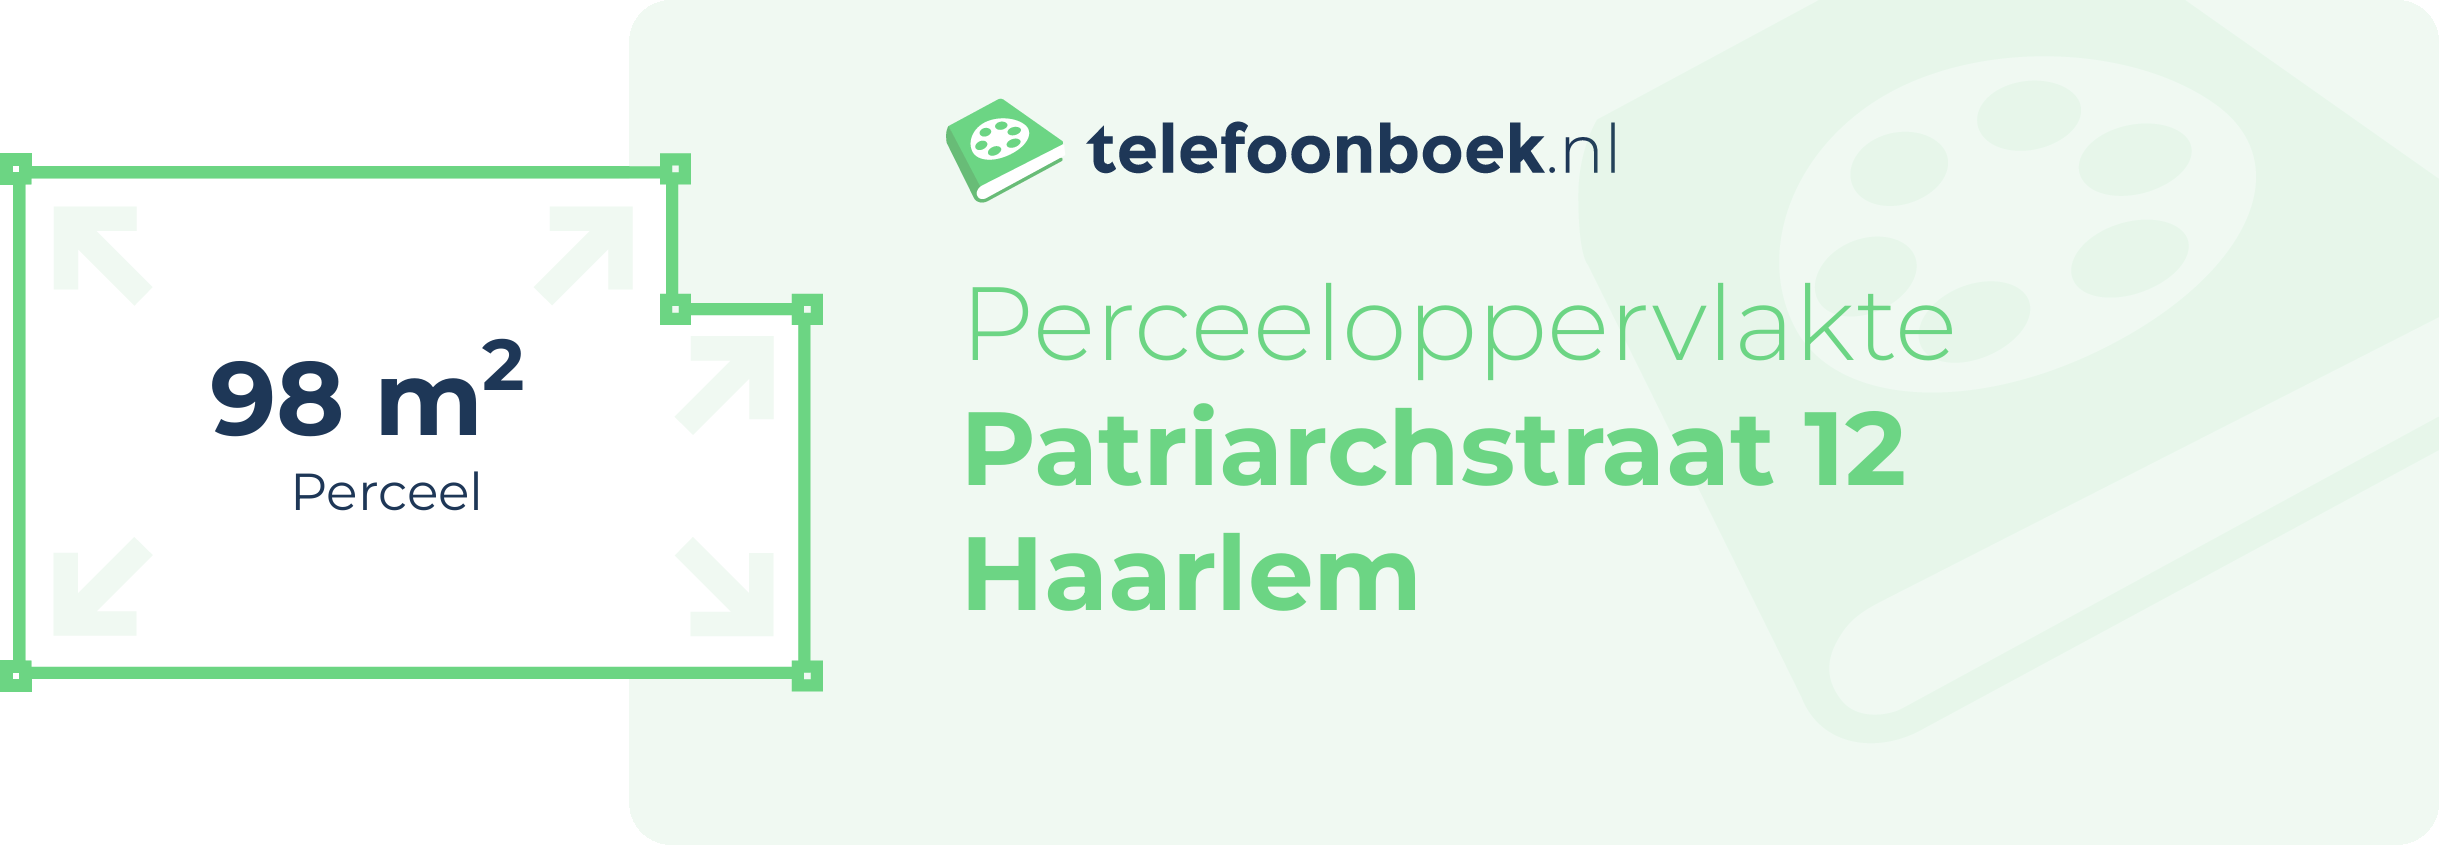 Perceeloppervlakte Patriarchstraat 12 Haarlem